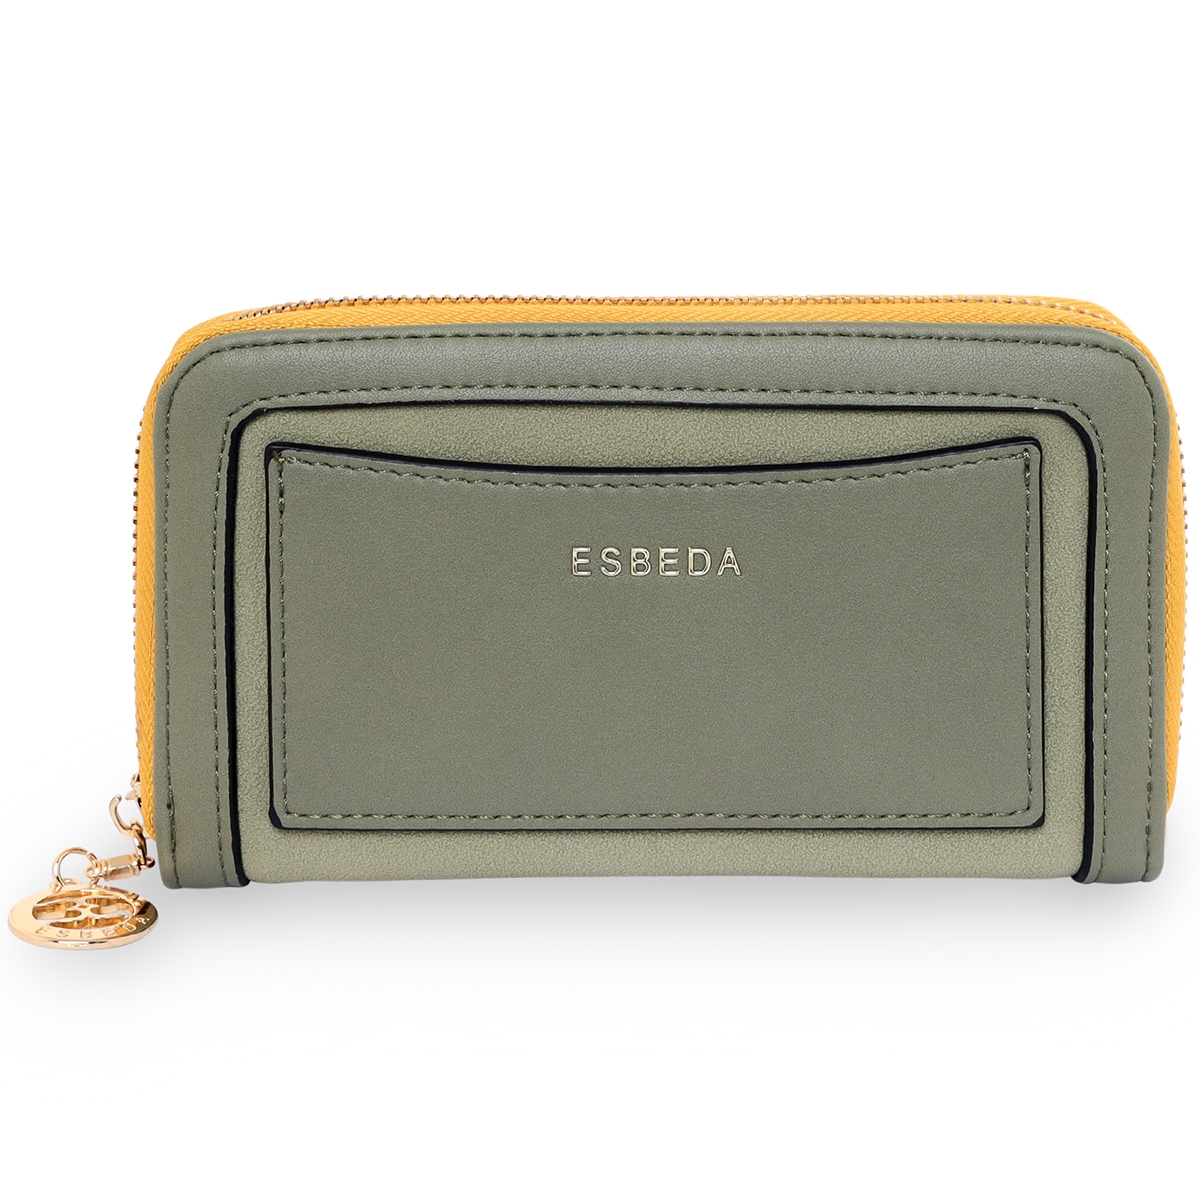 ESBEDA | ESBEDA Olive Green Color Soft Suede Wallet For Women's- Medium